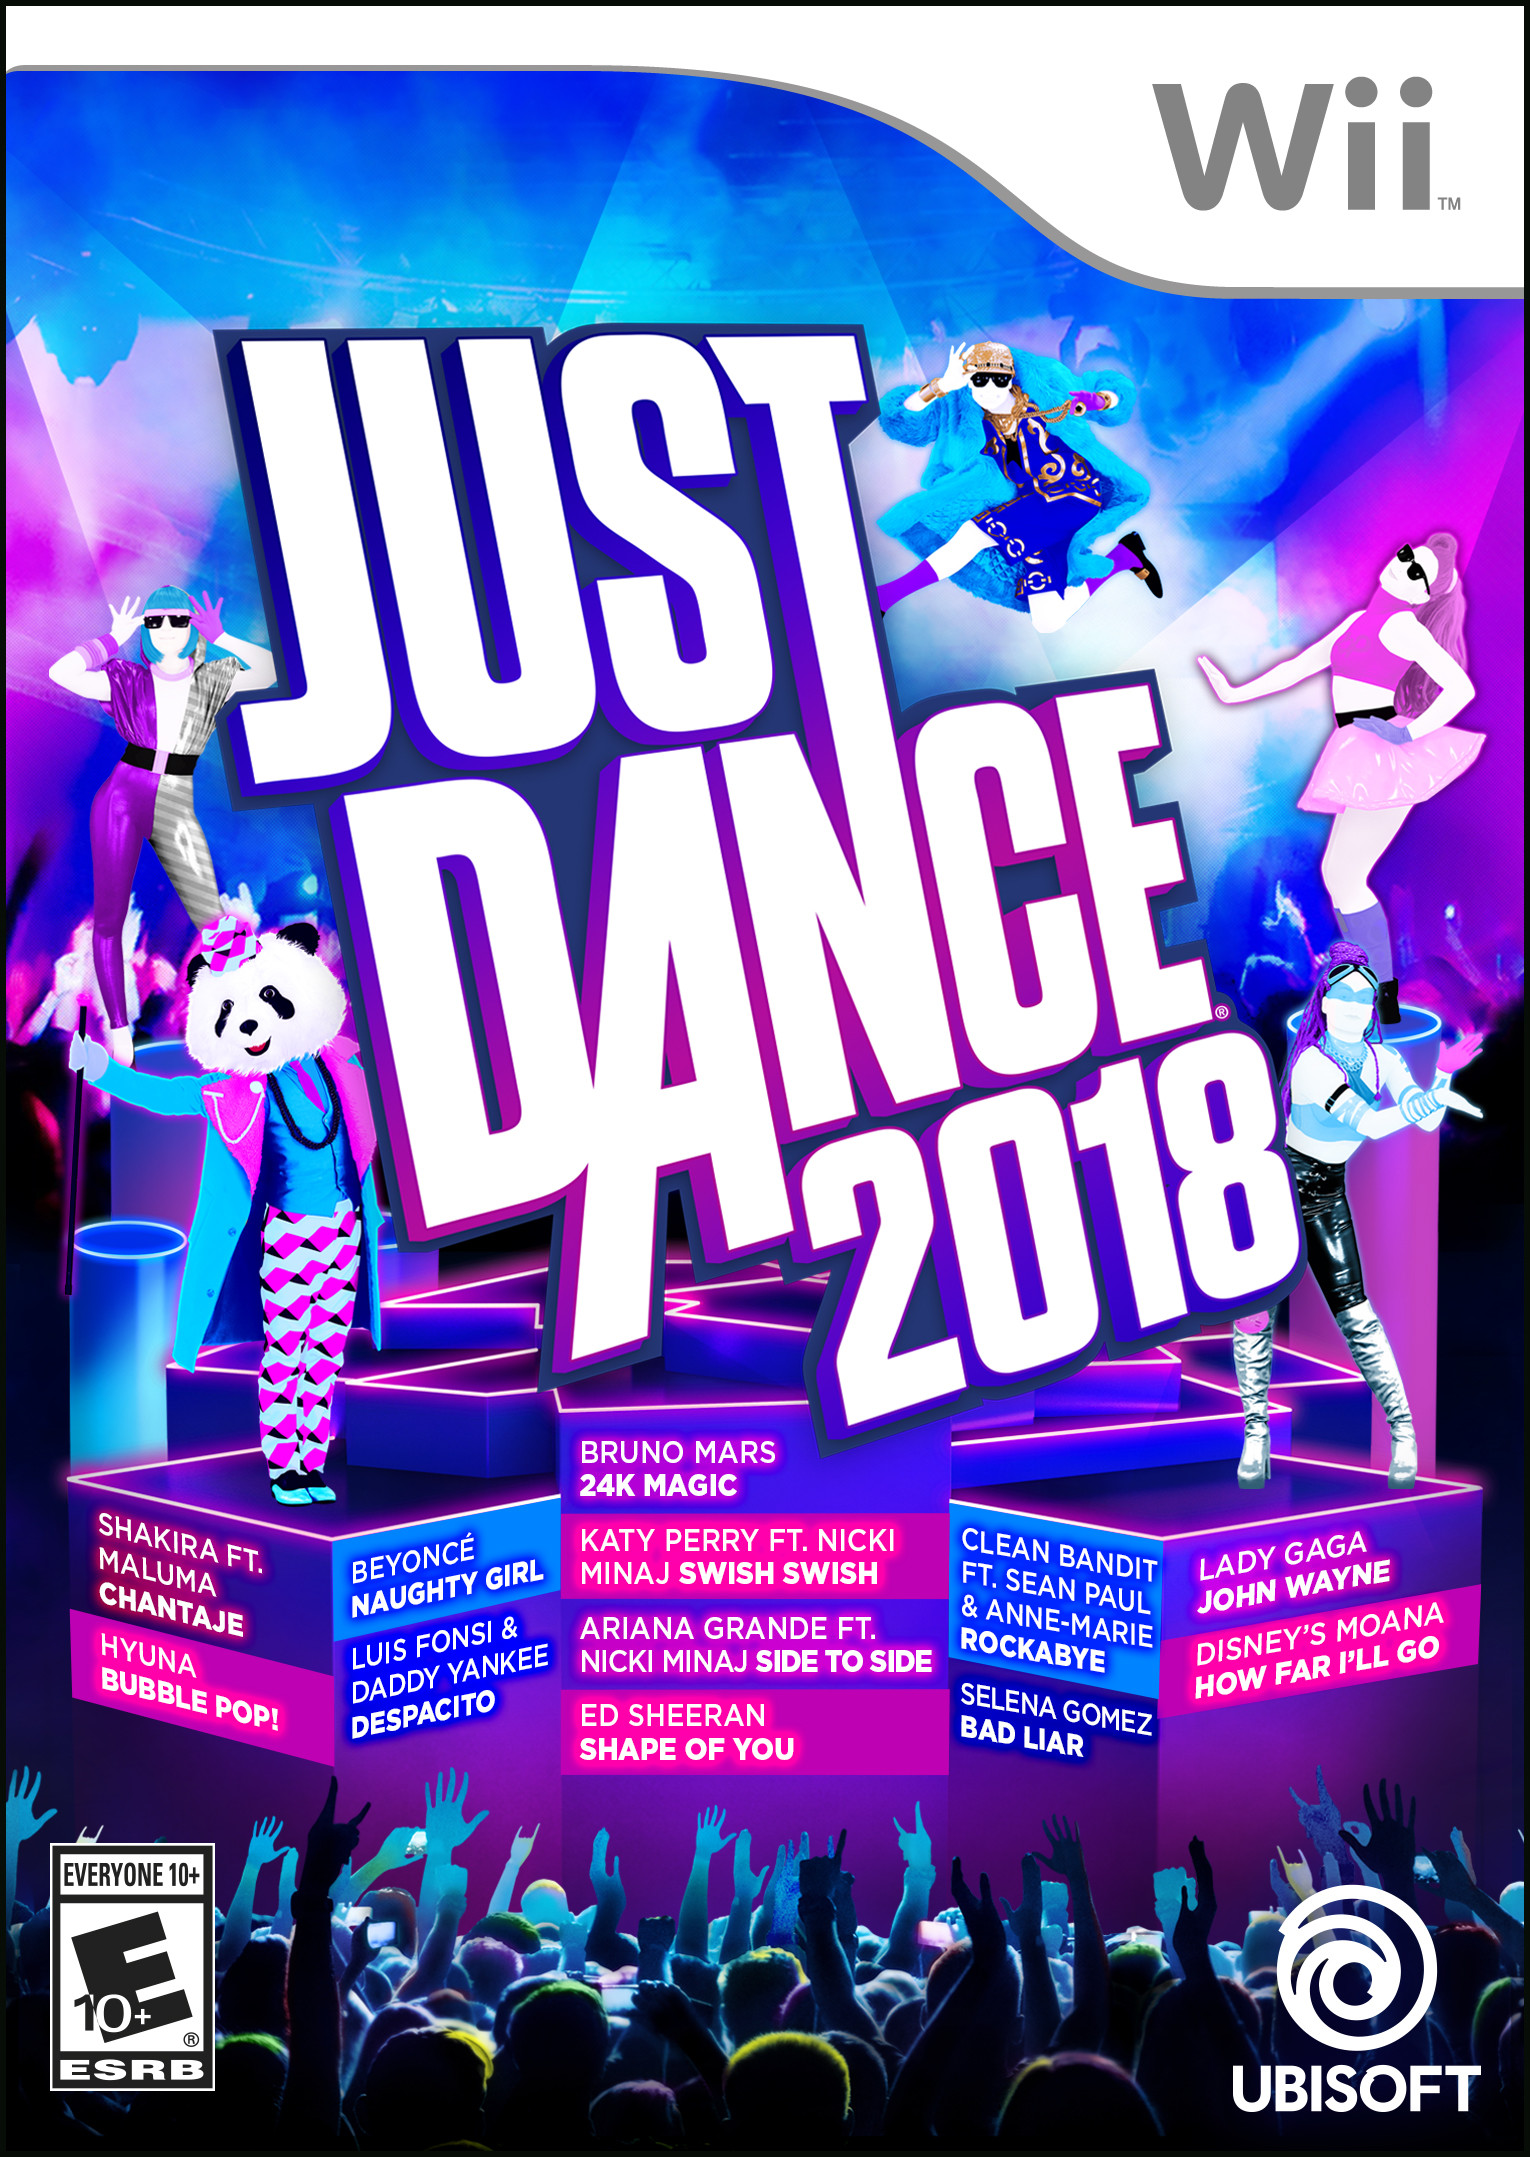 Data Src Blood On The Dance Floor 2018 Wallpaper Lockscreen - Just Dance 2018 Wii - HD Wallpaper 